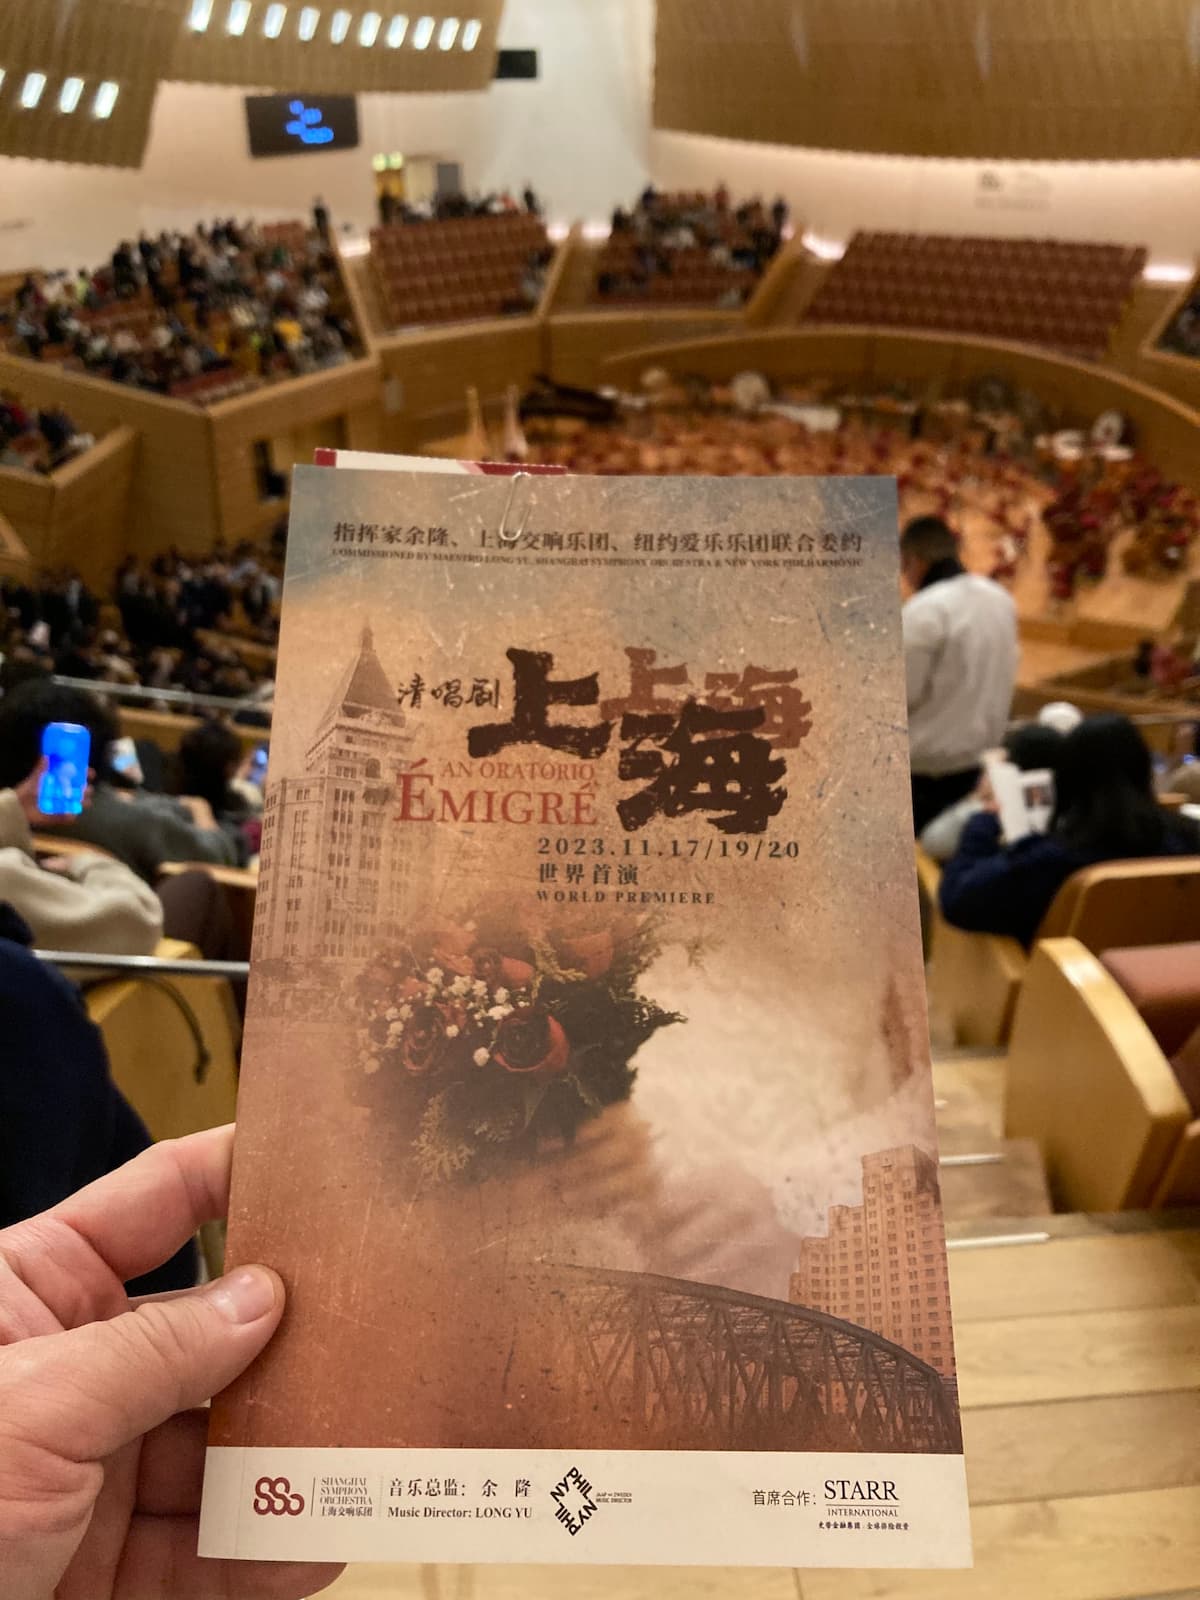 The premiere of Émigré at Shanghai Symphony Hall